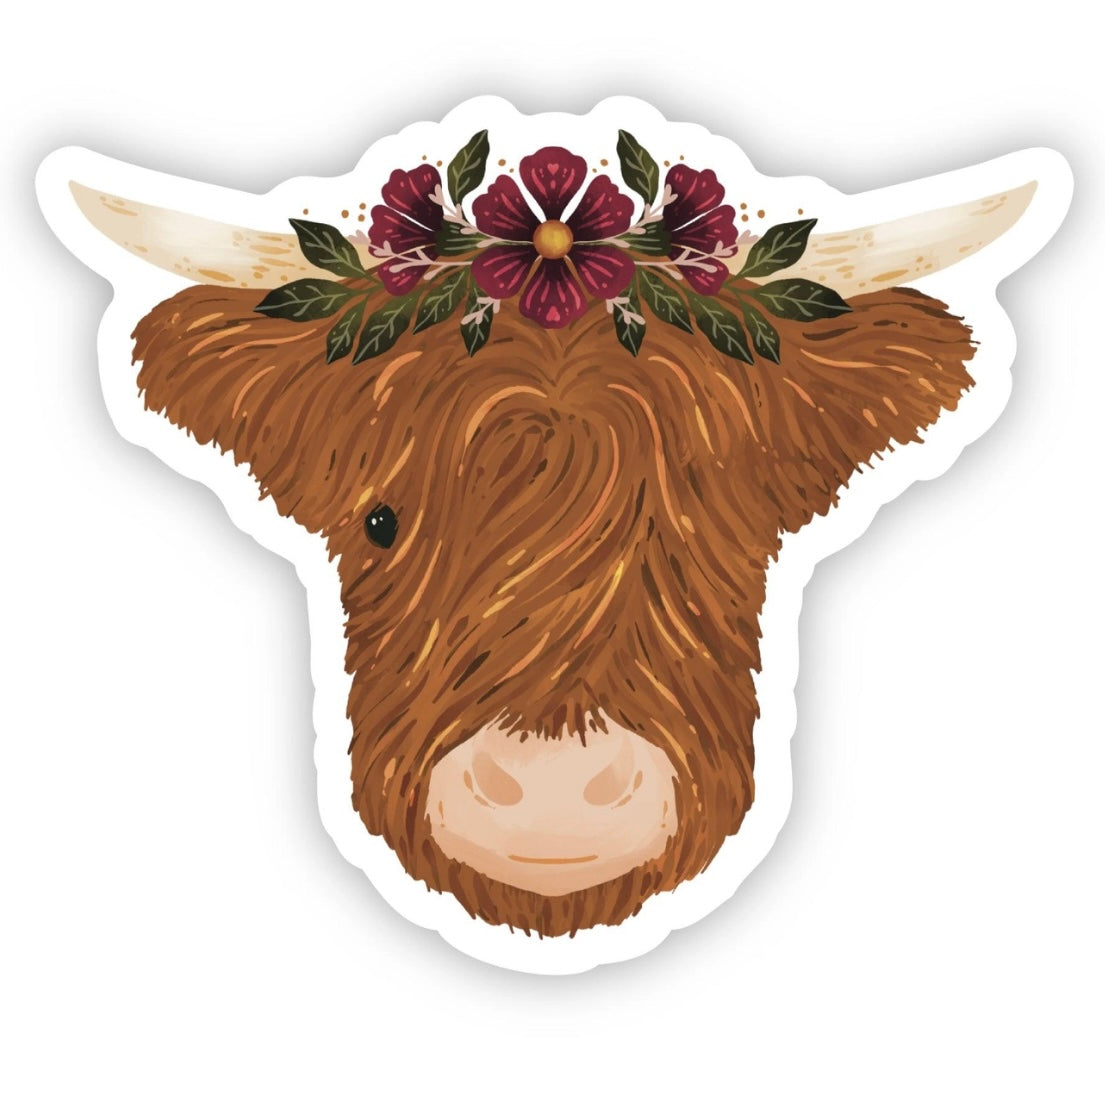 Highland Cow & Flower Crown Vinyl Sticker